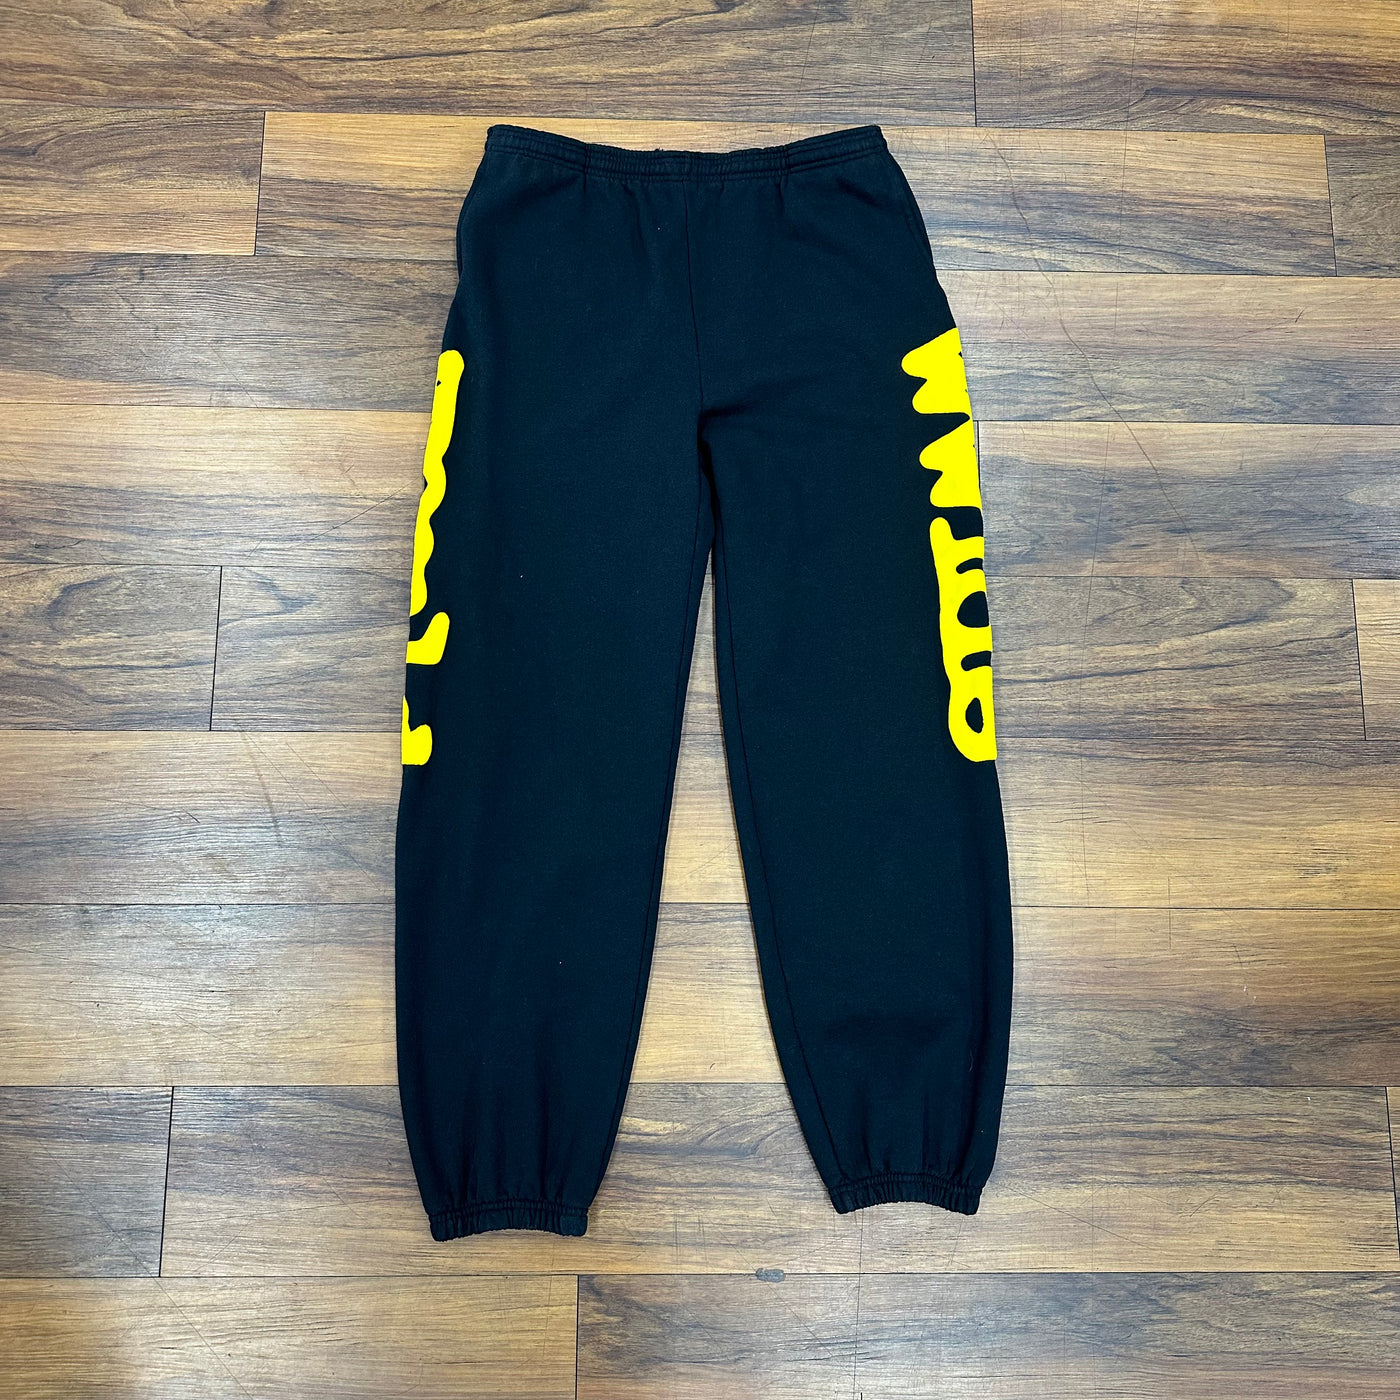 Sp5der Sweat Pants 'Beluga' Black & Yellow